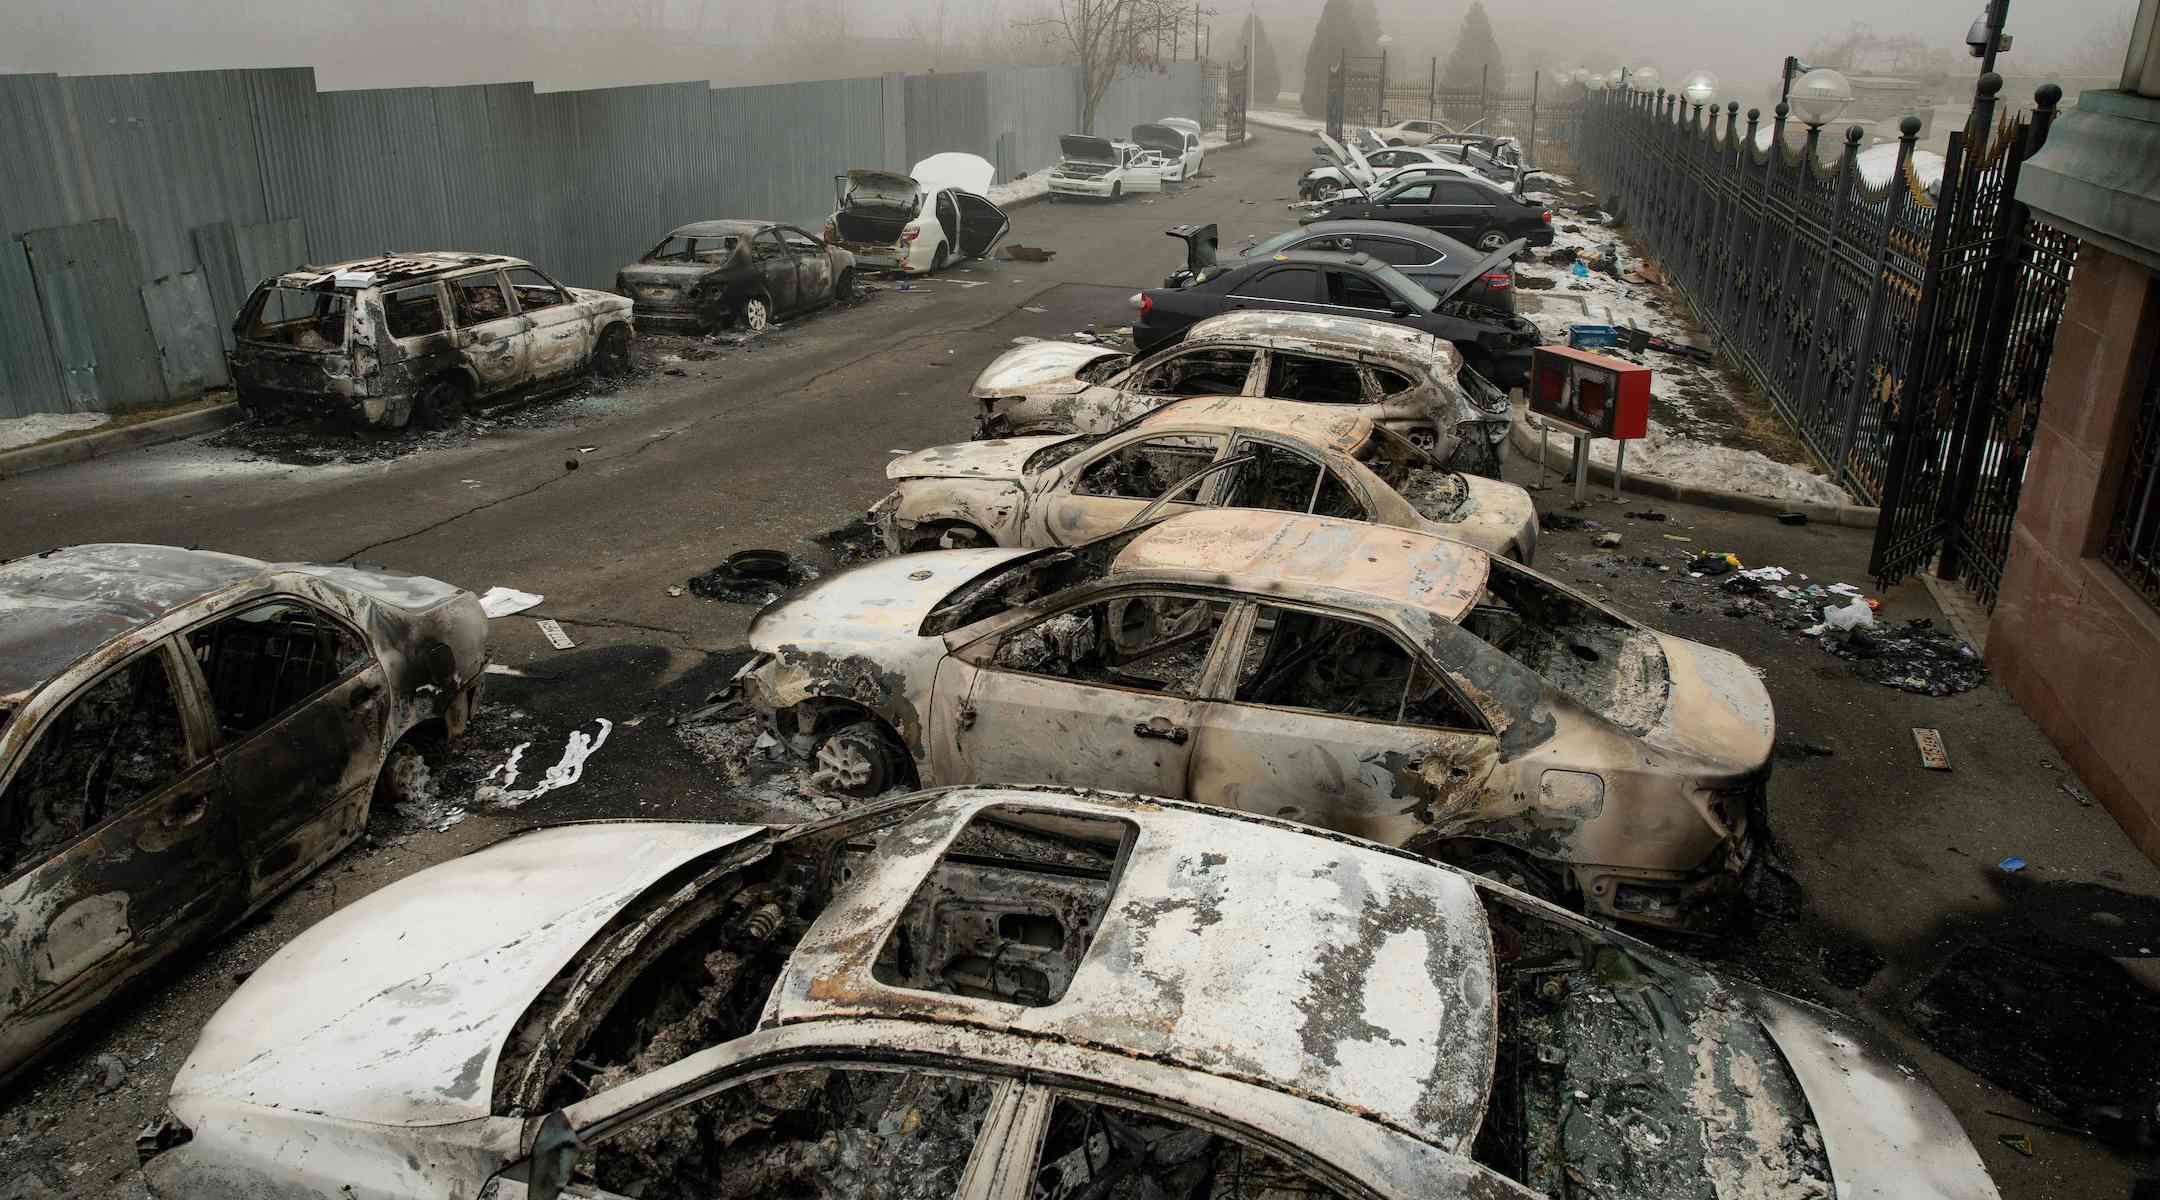 Burned cars in Almaty, Kazakhstan